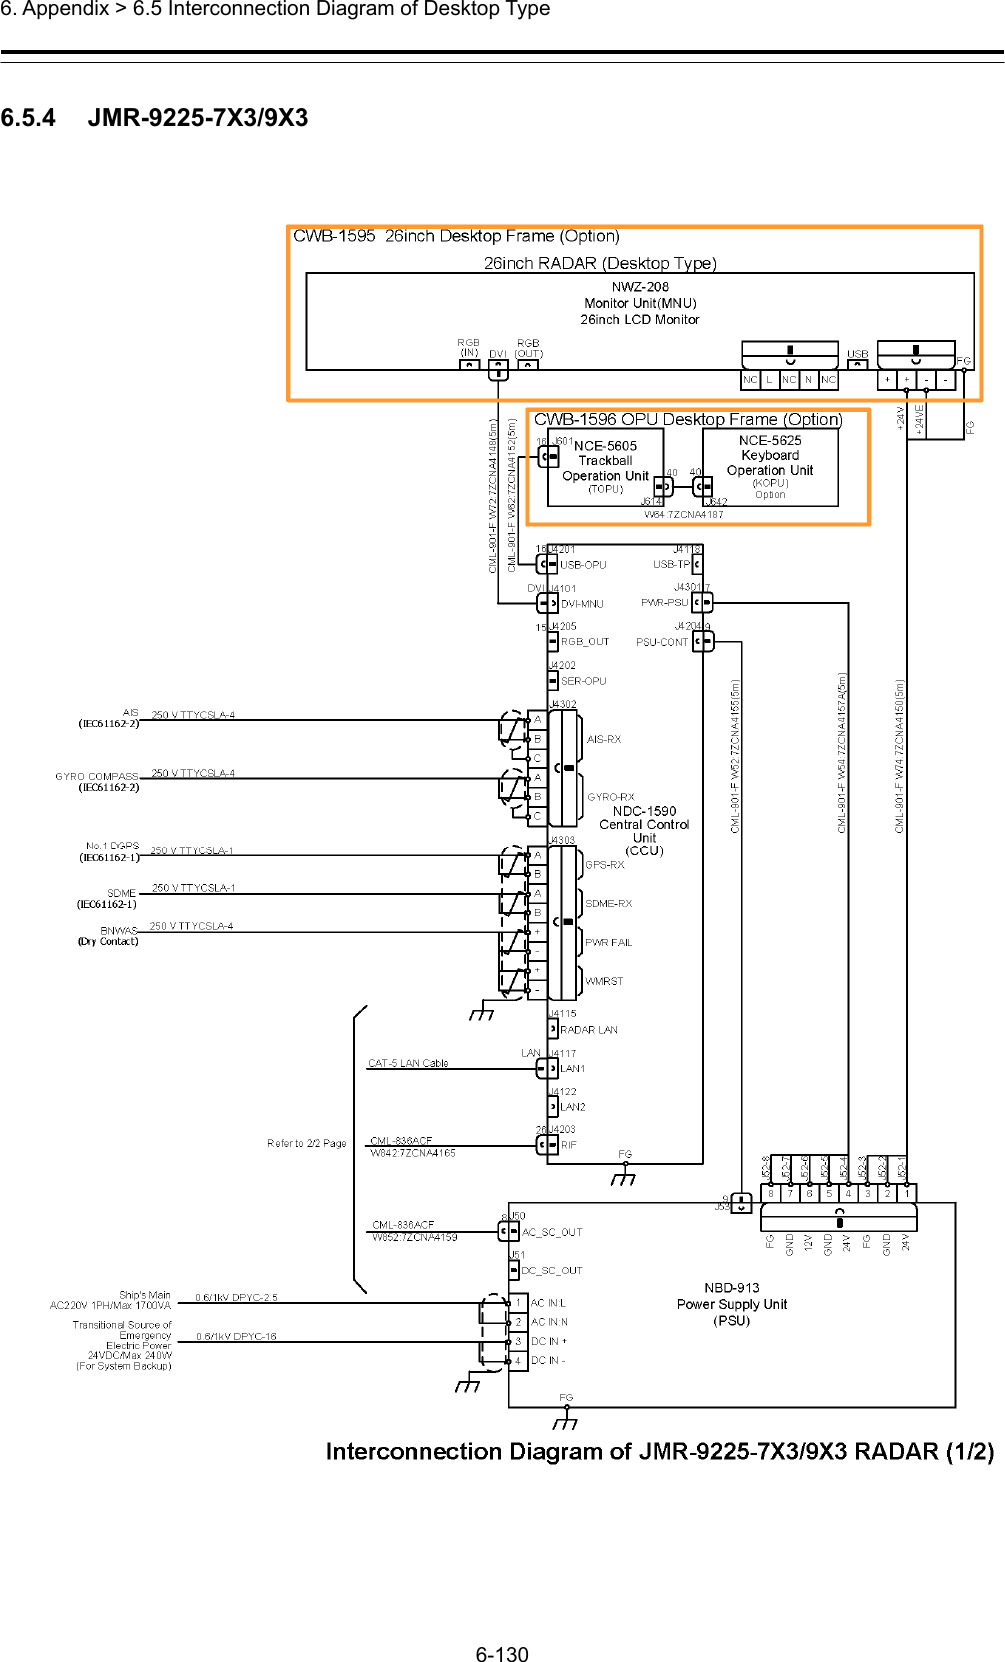  6. Appendix &gt; 6.5 Interconnection Diagram of Desktop Type 6-130  6.5.4   JMR-9225-7X3/9X3  